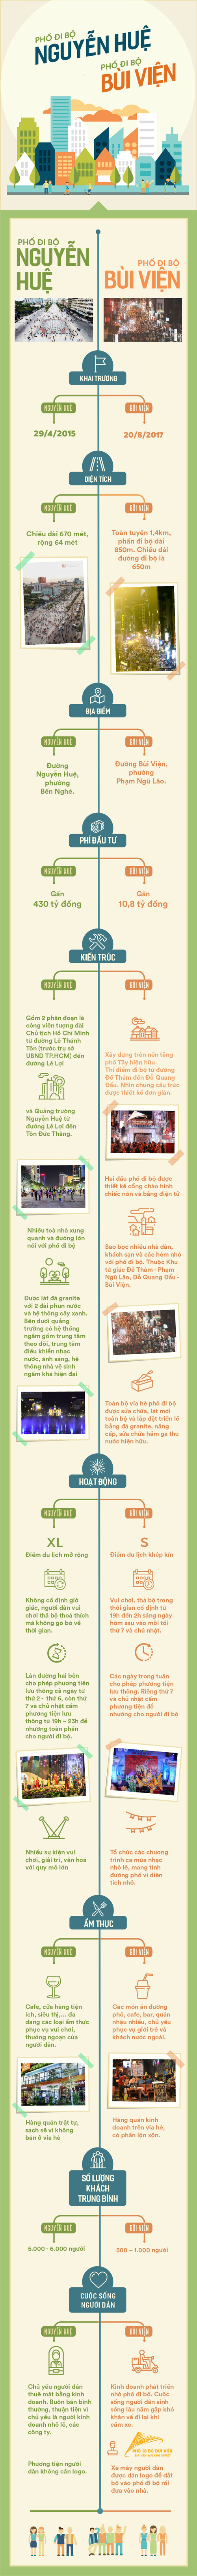  Những điểm khác biệt giữa phố đi bộ Nguyễn Huệ và Bùi Viện